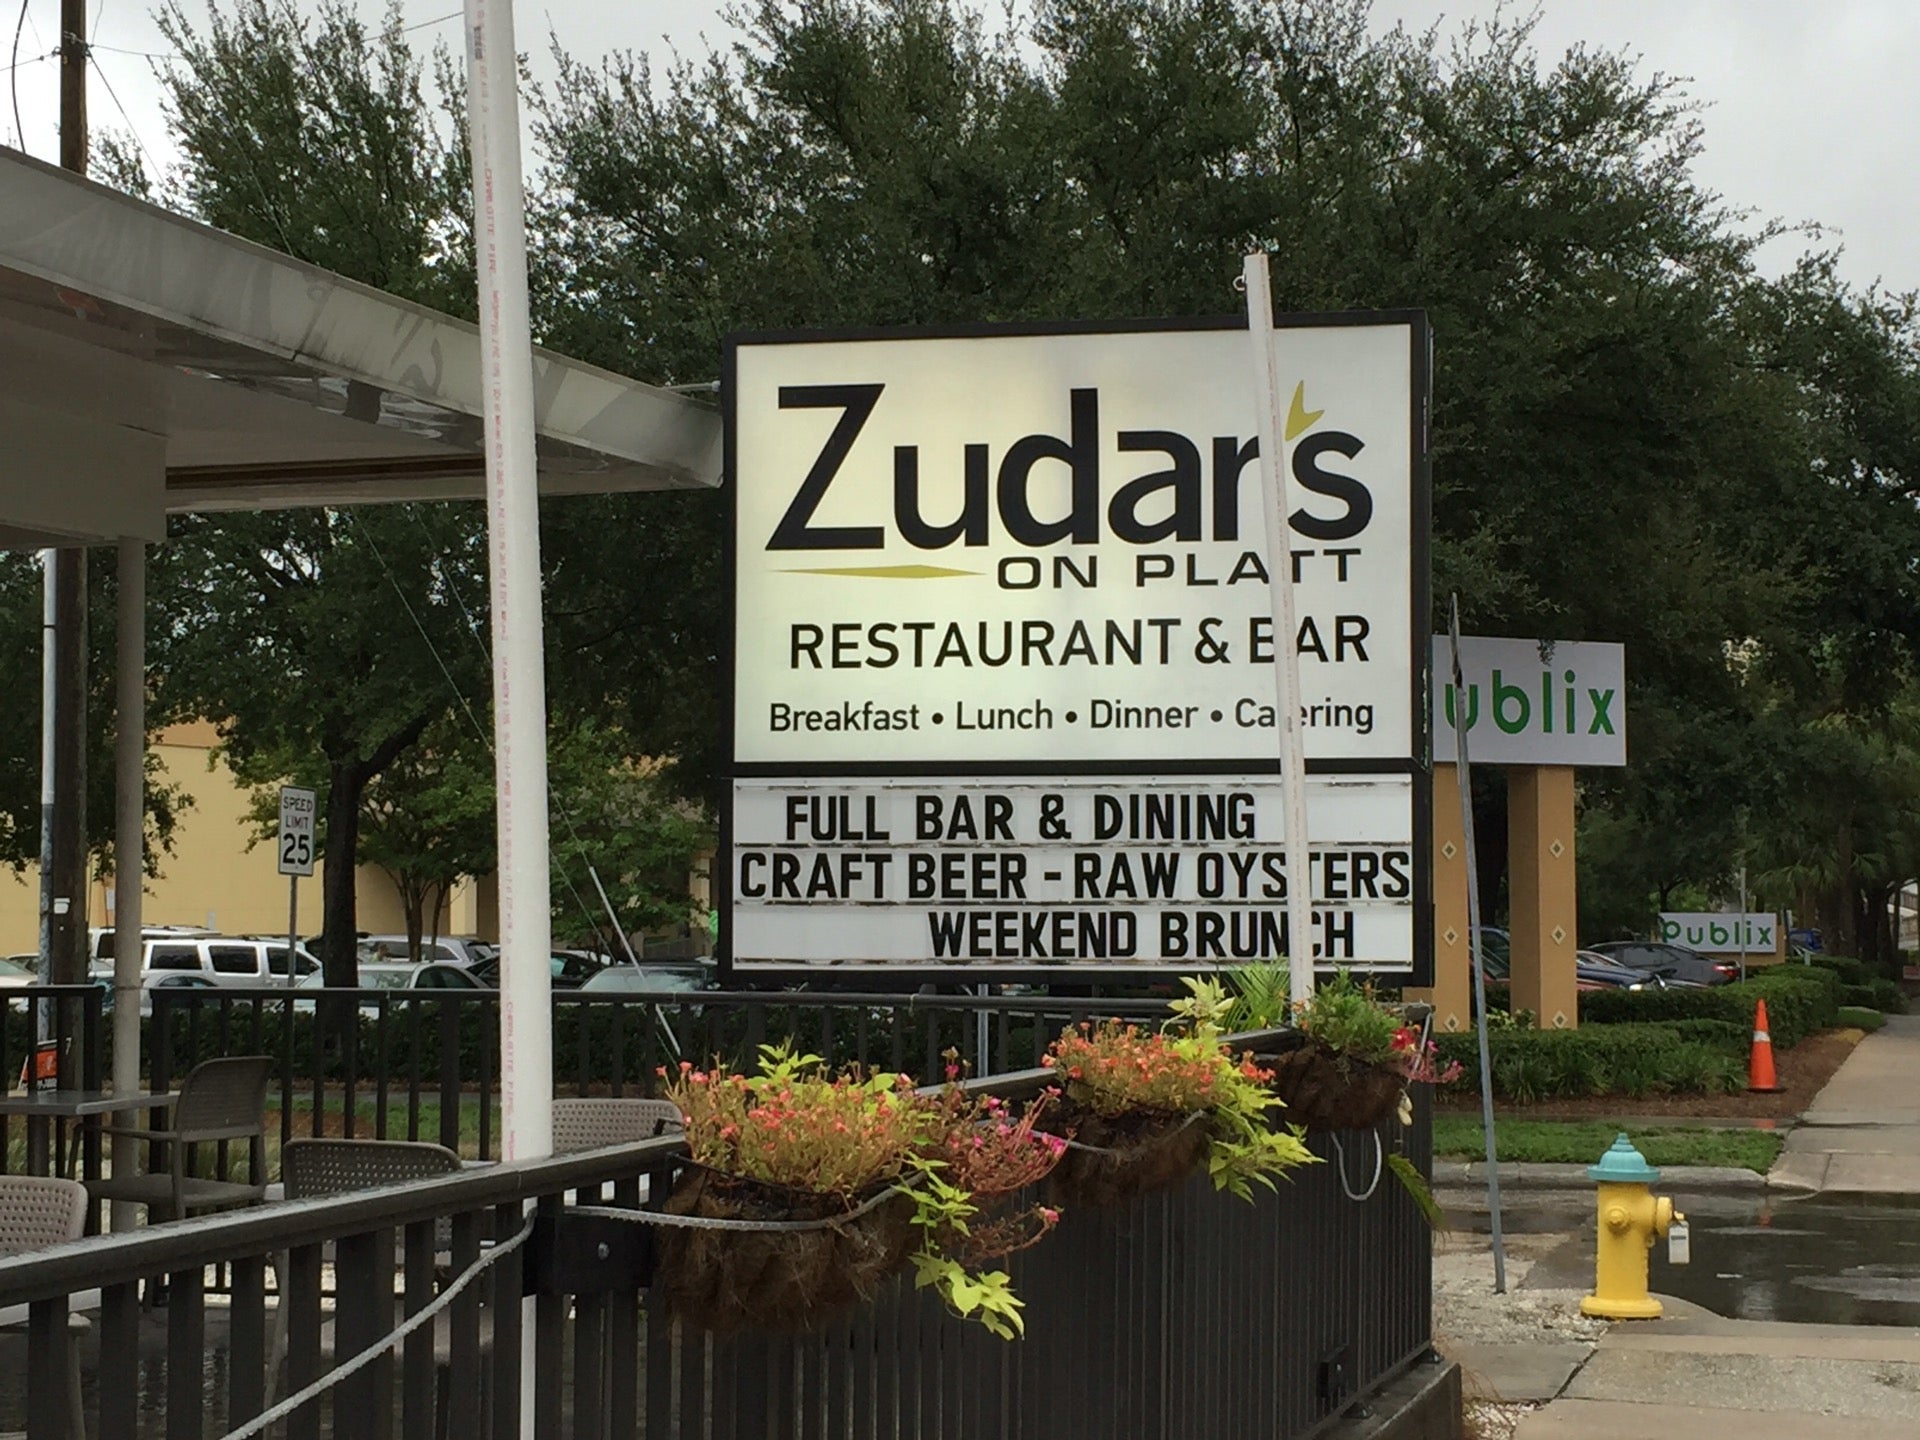 Zudar's on Platt